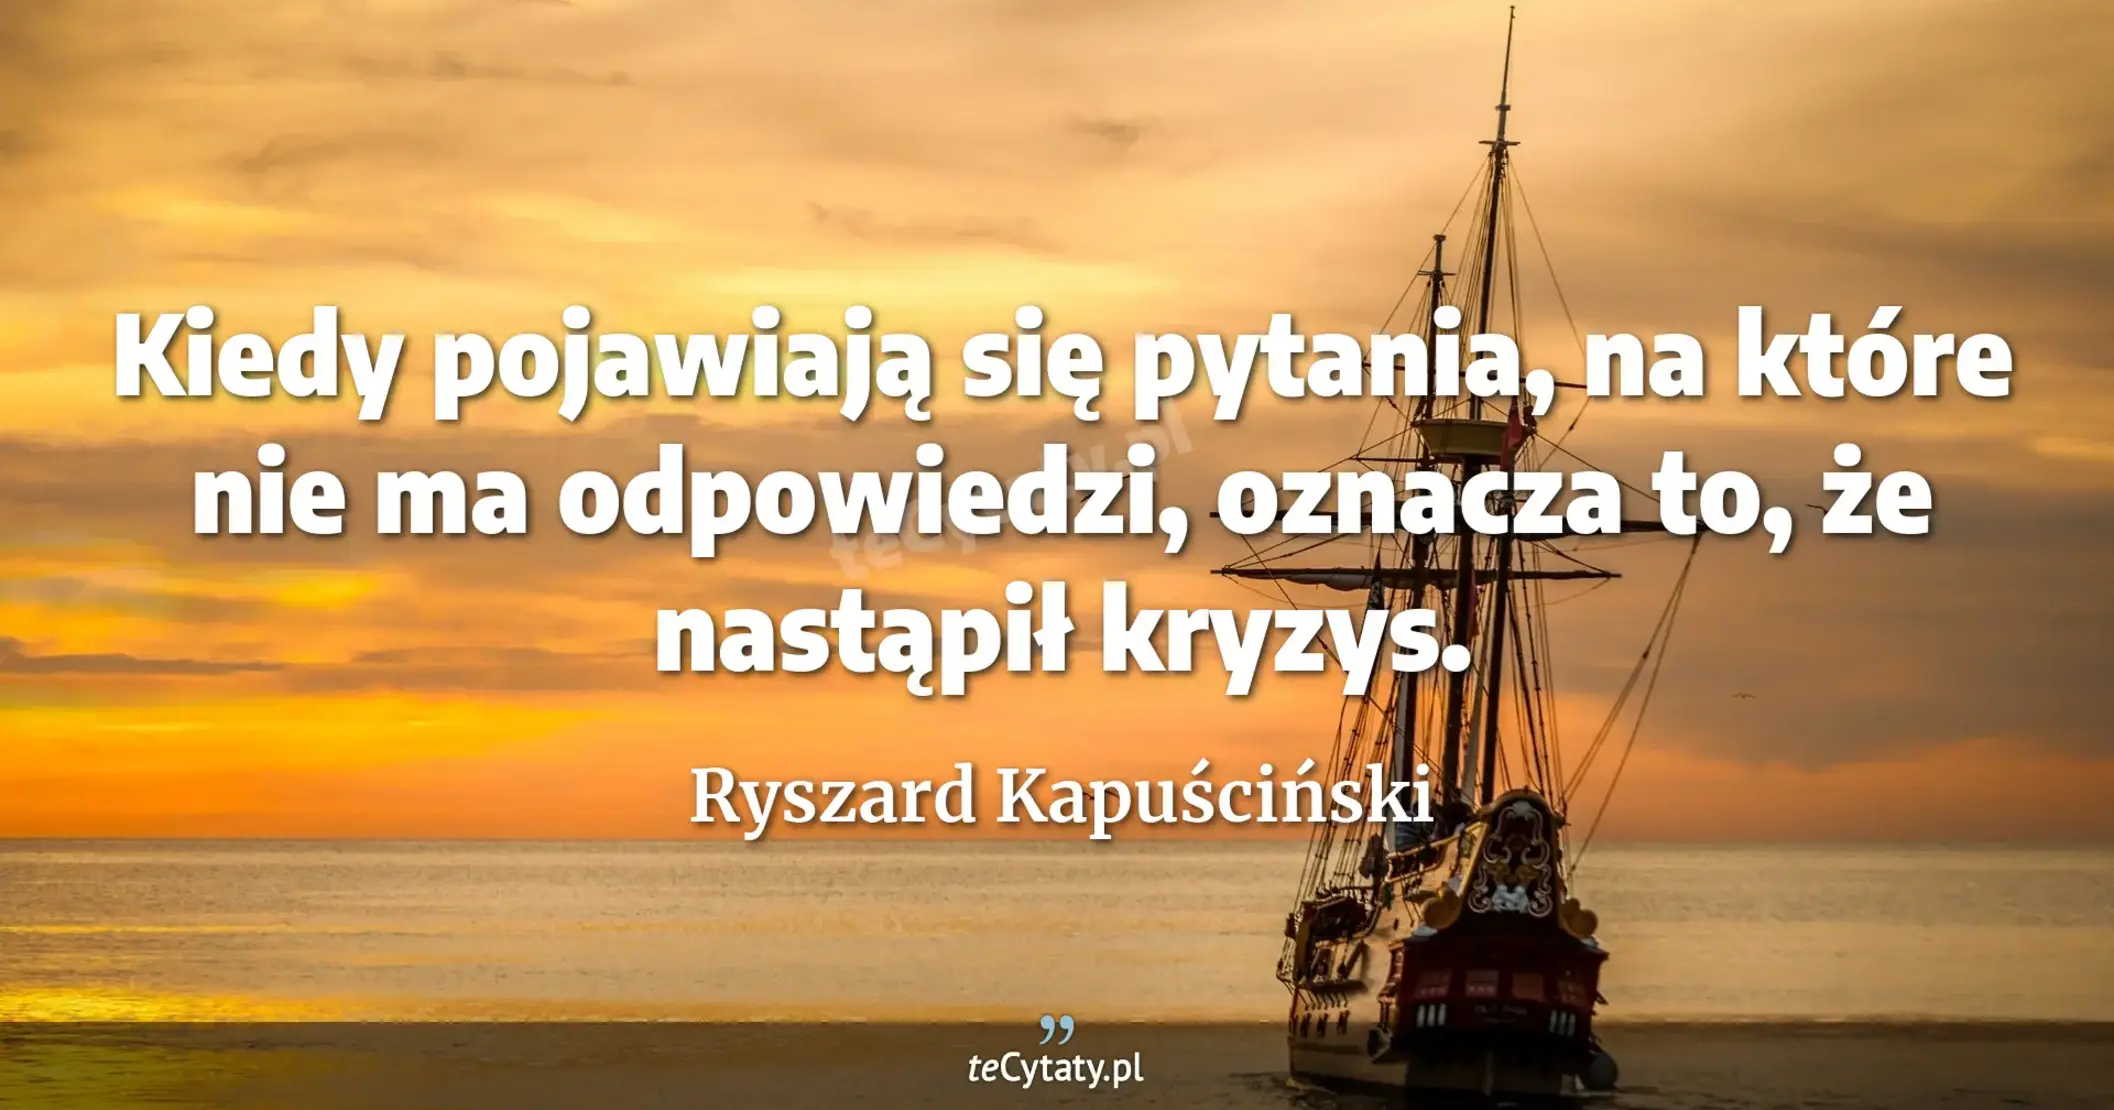 Kiedy pojawiają się pytania, na które nie ma odpowiedzi, oznacza to, że nastąpił kryzys. - Ryszard Kapuściński